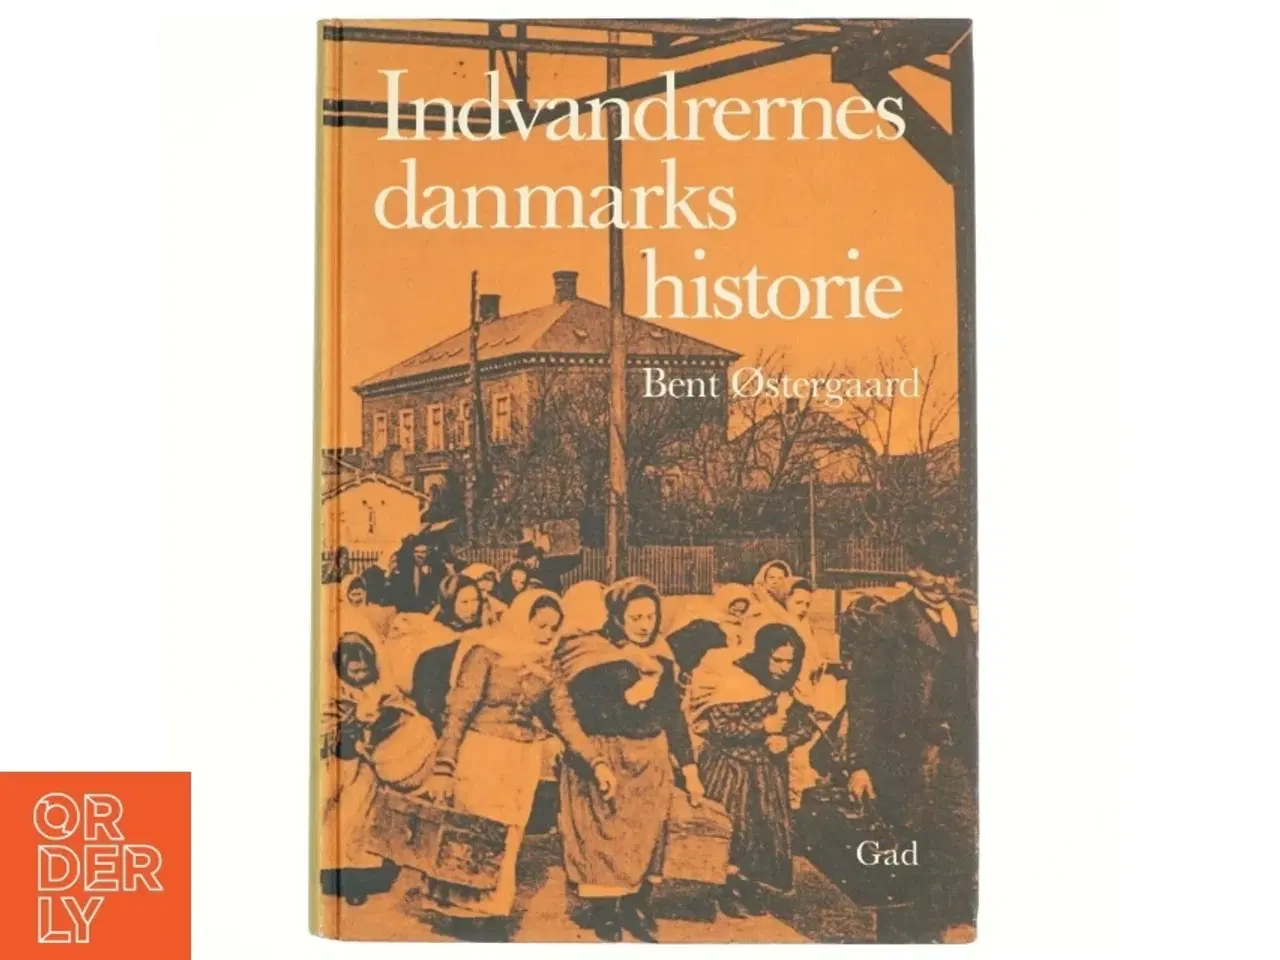 Billede 1 - Indvandrerndes danmarkshistorier af Bent Østergaard (bog) fra gad